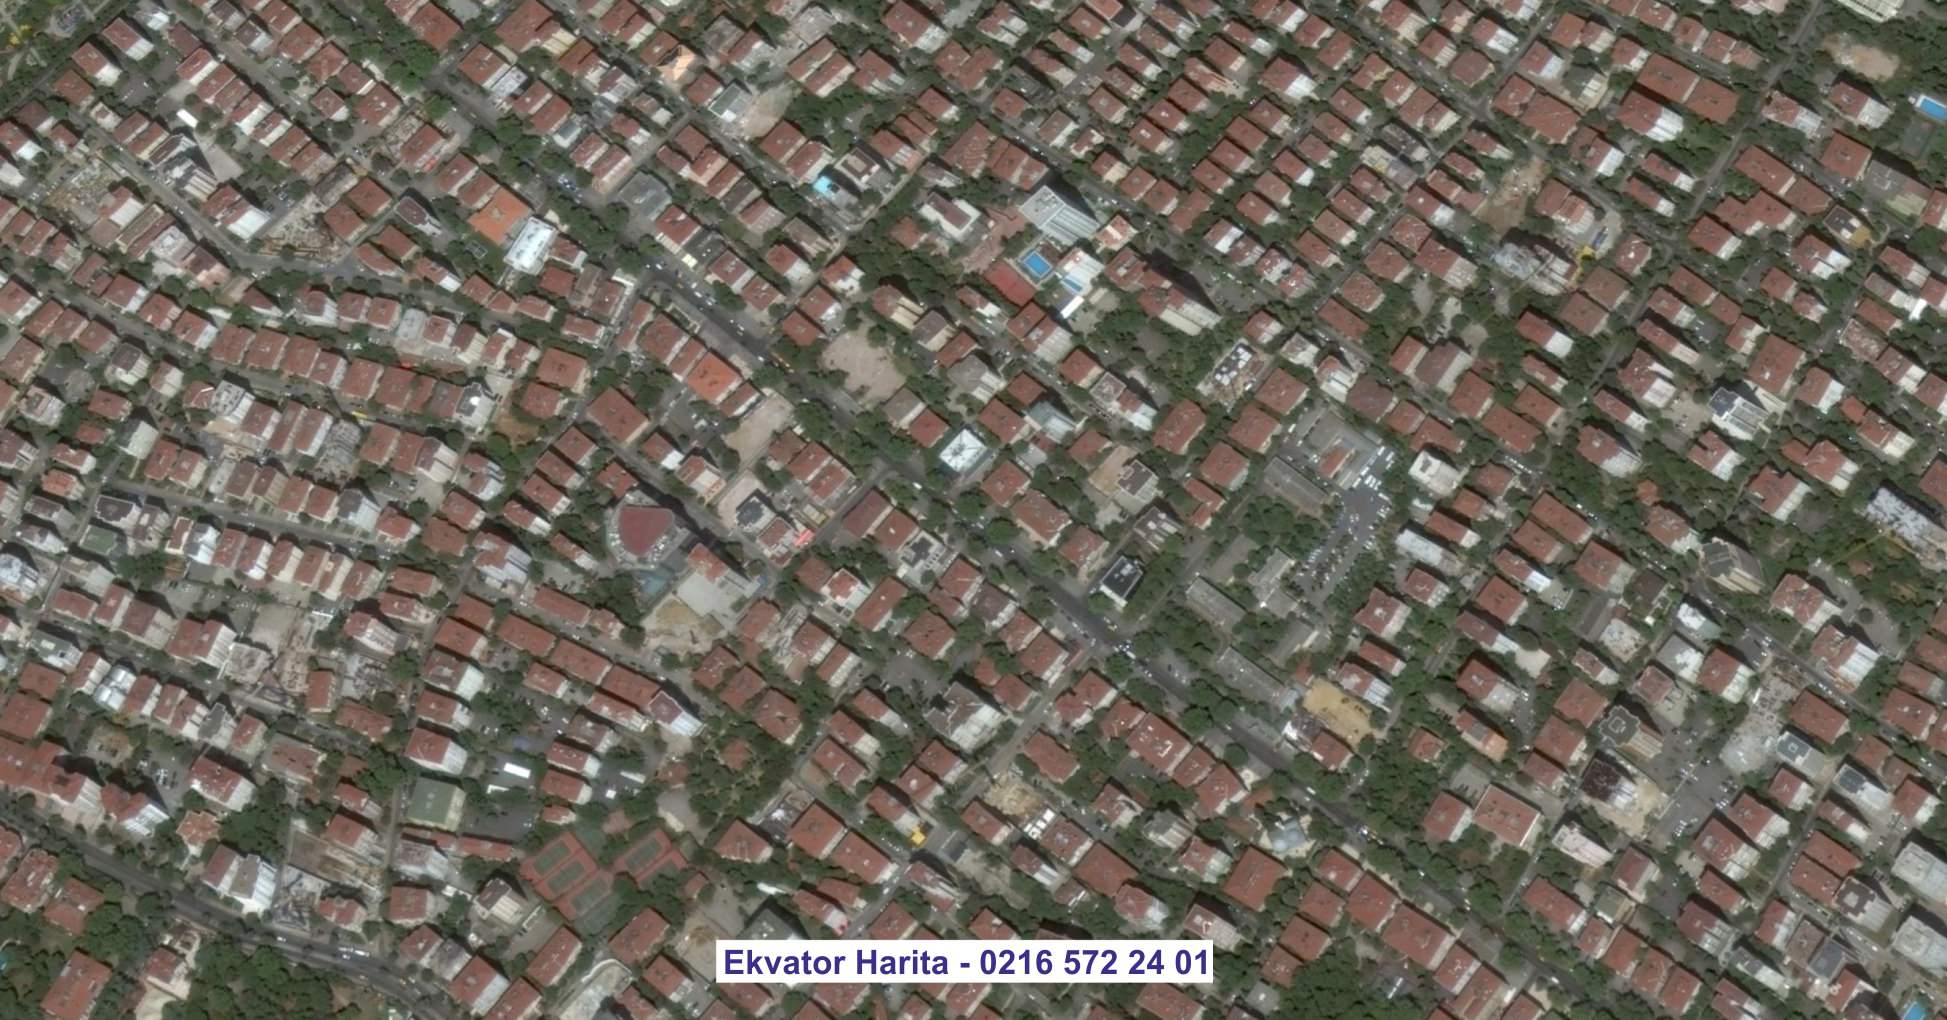 Gümüşhane Uydu Görüntüsü Örnek Fotoğrafı